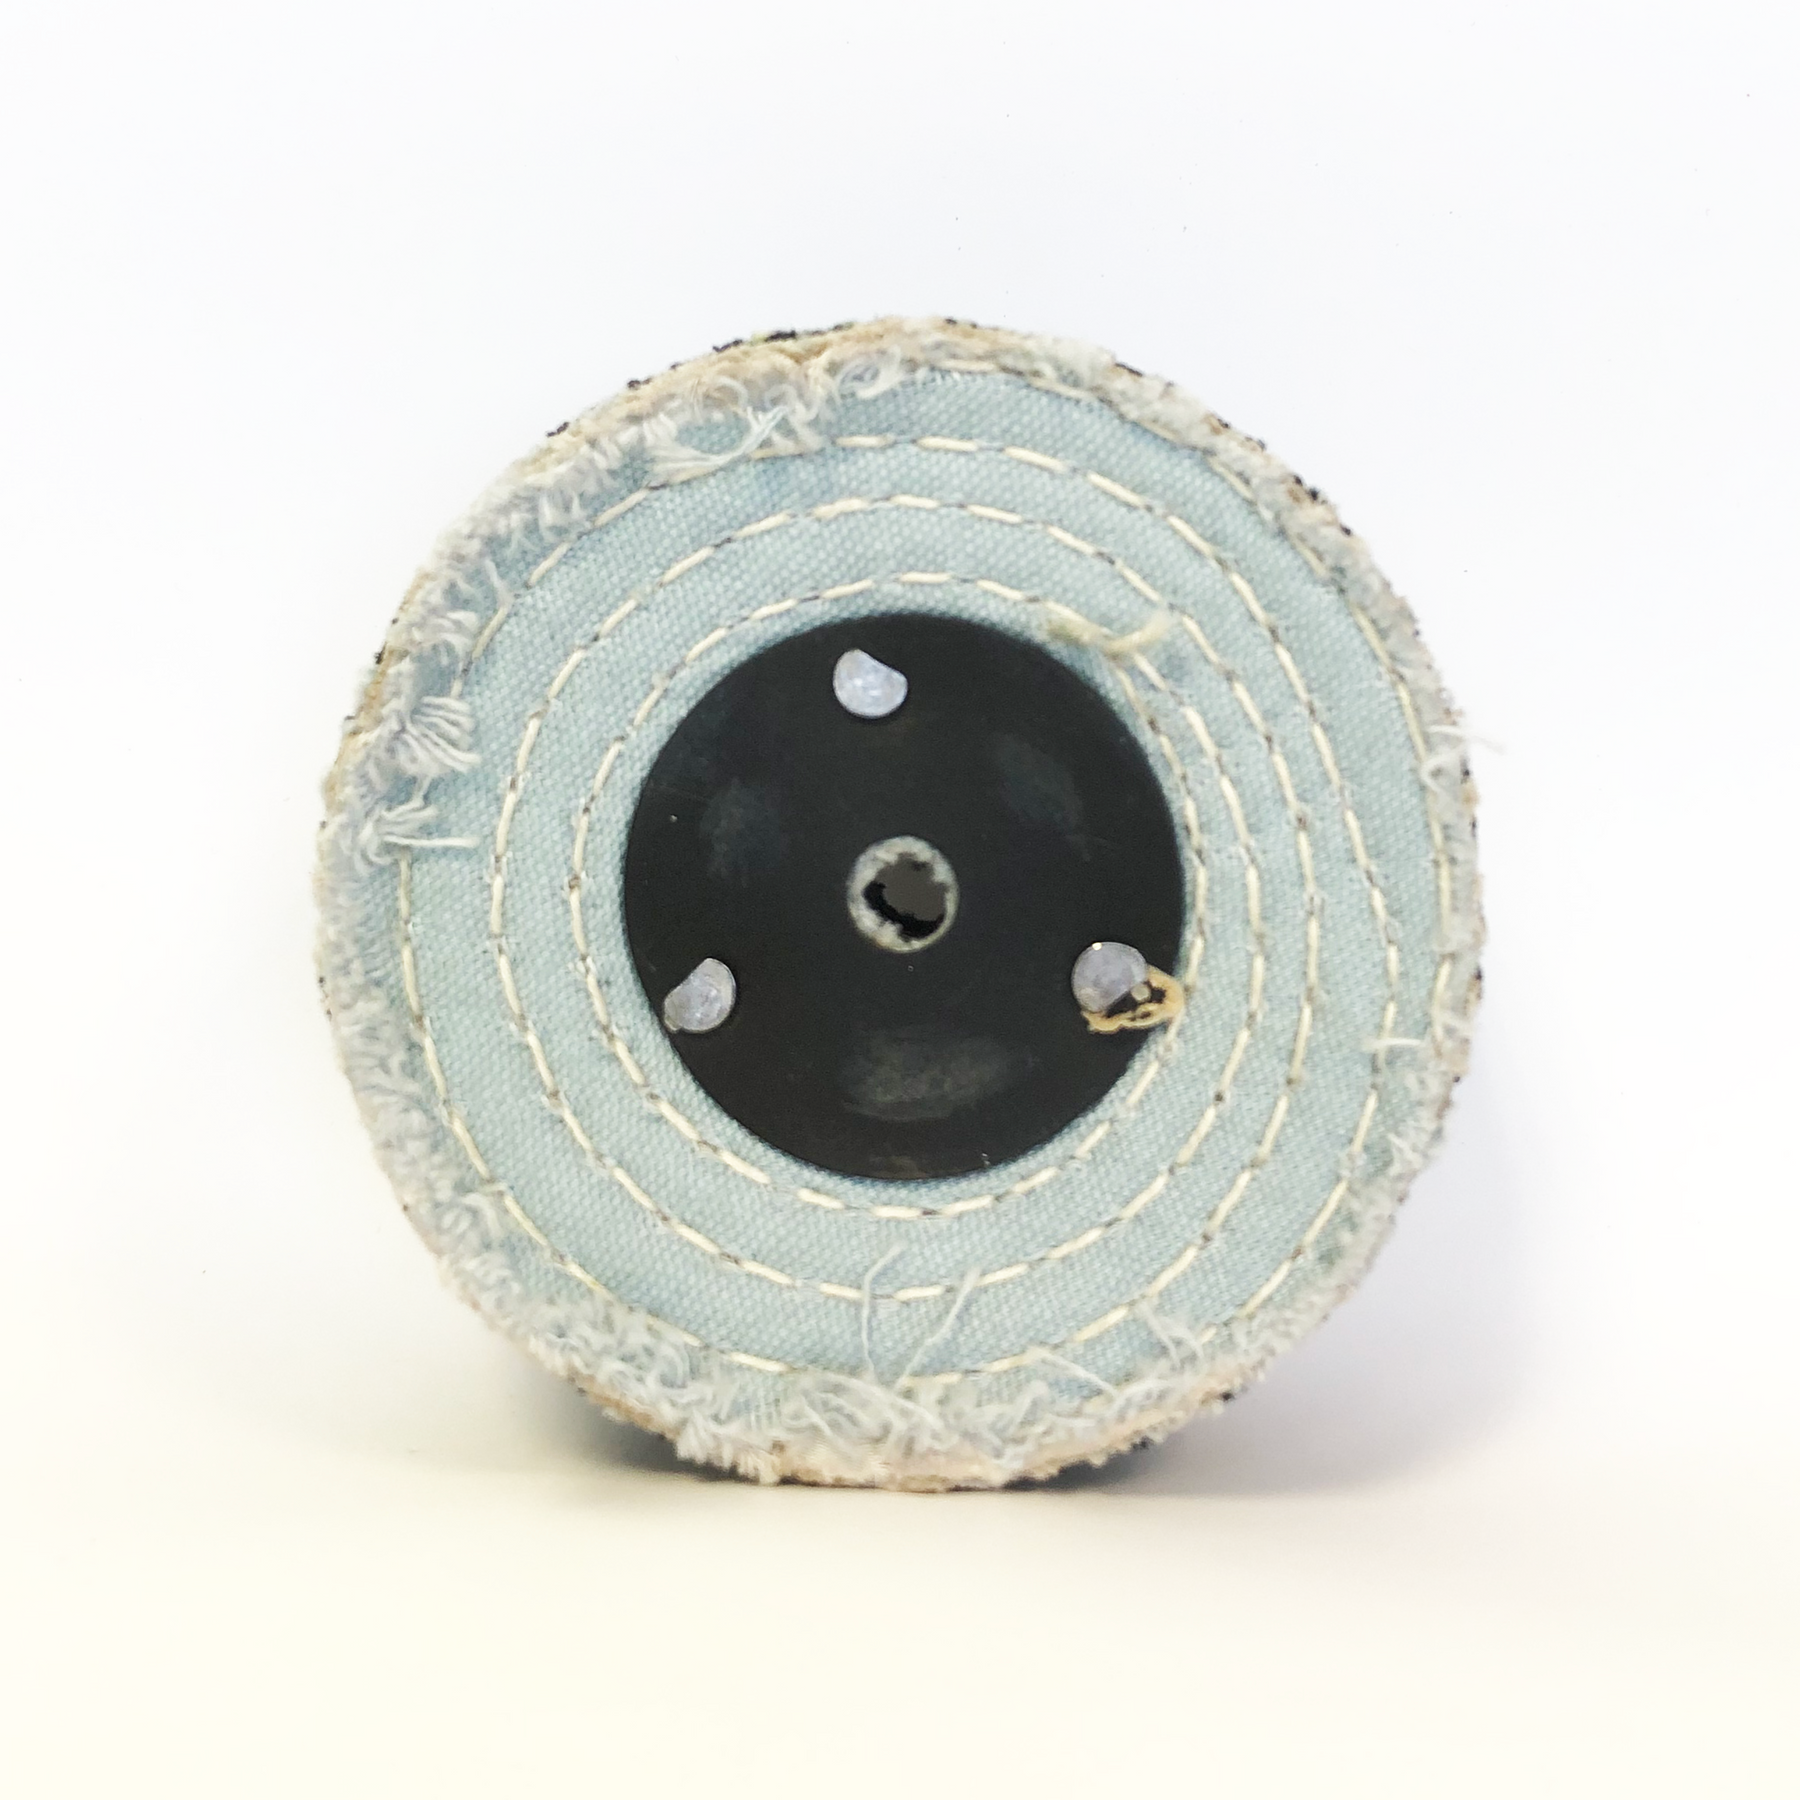 Cotton polishing cylinder (stitched)